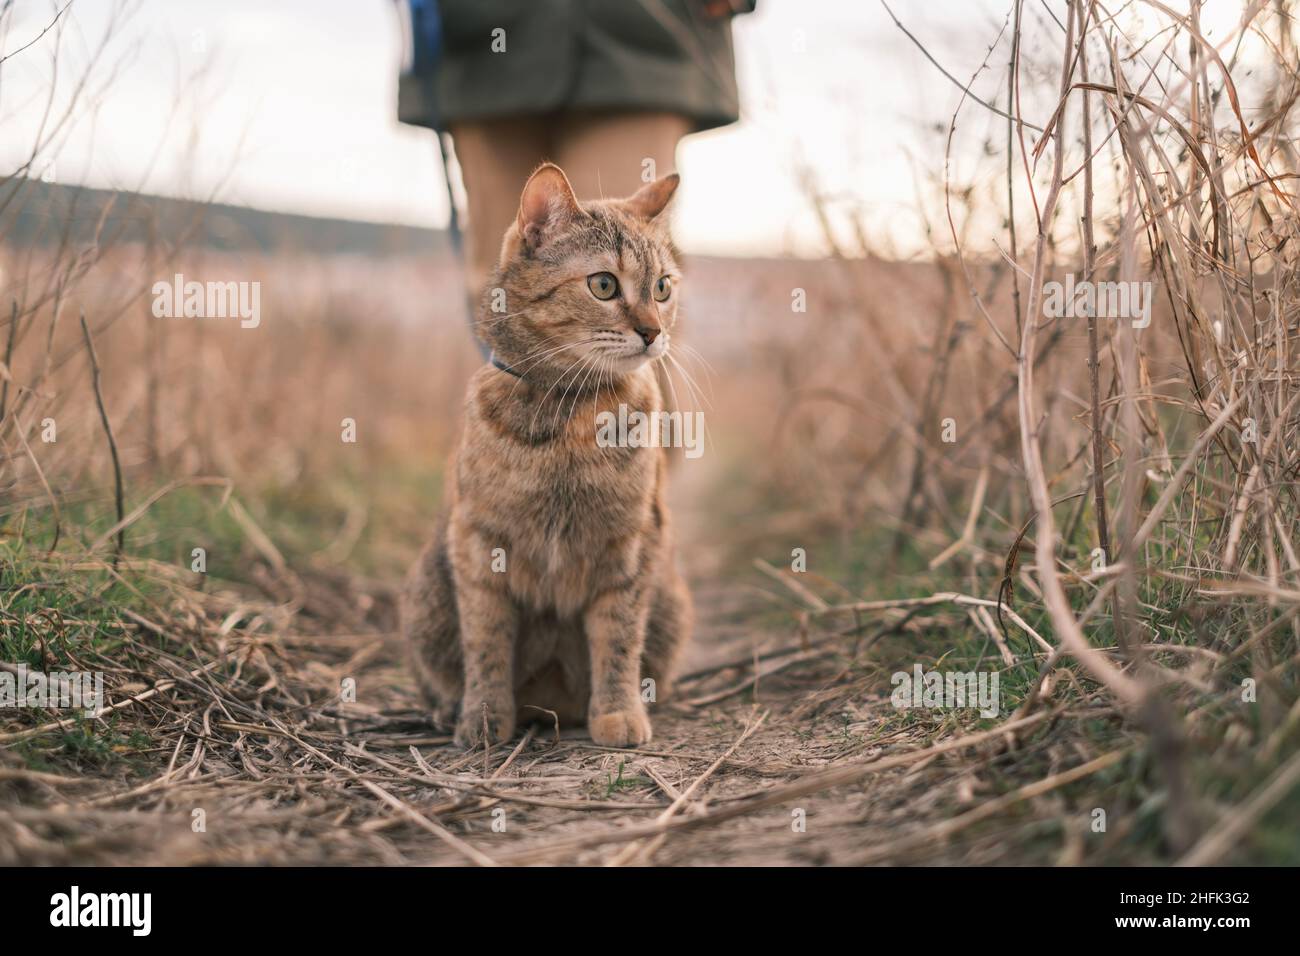 Le chat de tabby au gingembre marche sur une laisse dans la nature. Banque D'Images